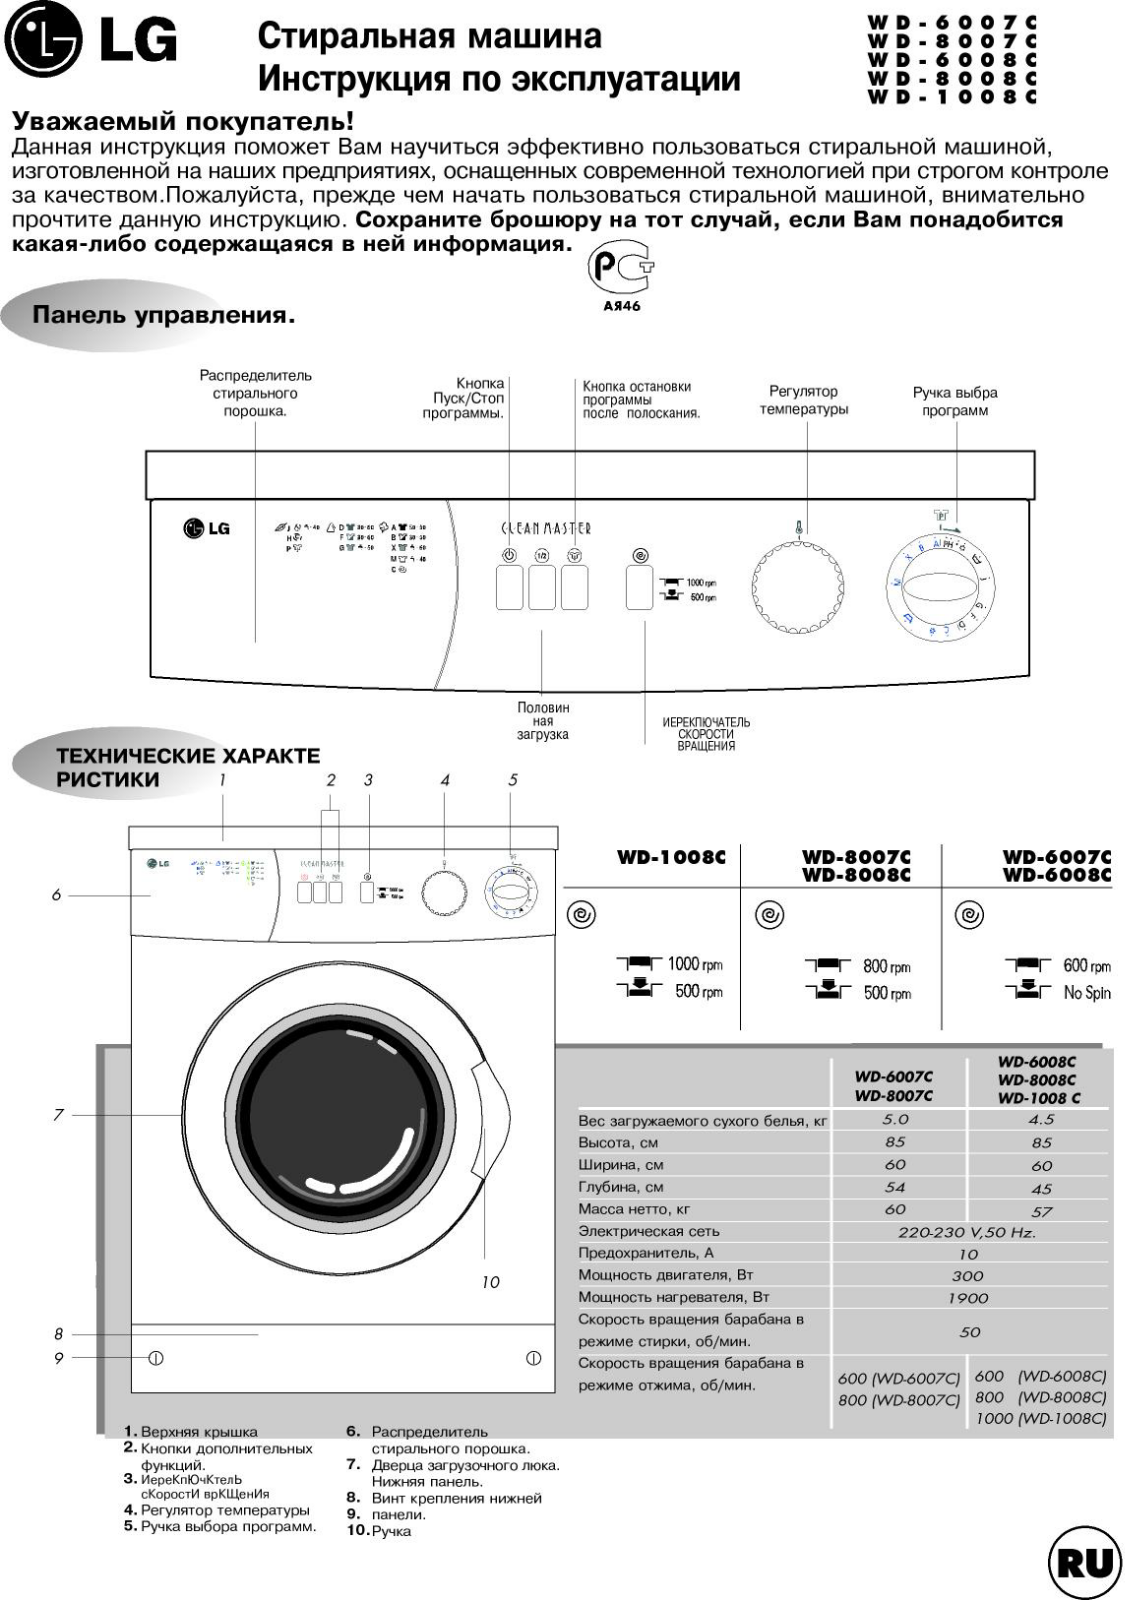 LG WD-8008C User Manual